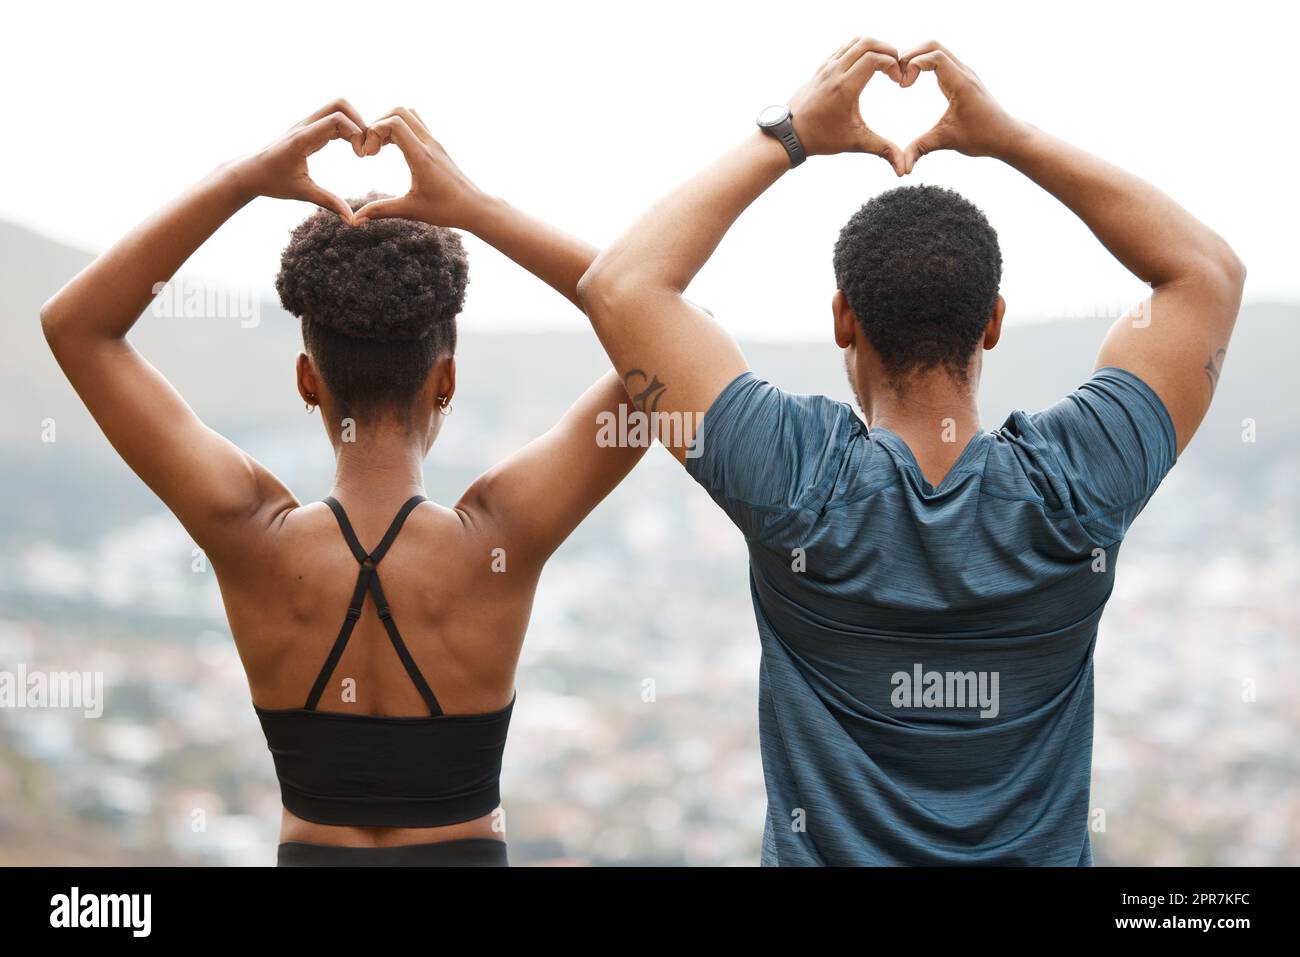 Die Rückansicht passt sich dem afroamerikanischen Paar an, das beim Sport im Freien mit den Händen Herzformen Formen lässt. Junger sportlicher Mann und junge sportliche Frau, die Gesundheit und Fitness im Freien fördern. Sie trainieren gern zusammen Stockfoto